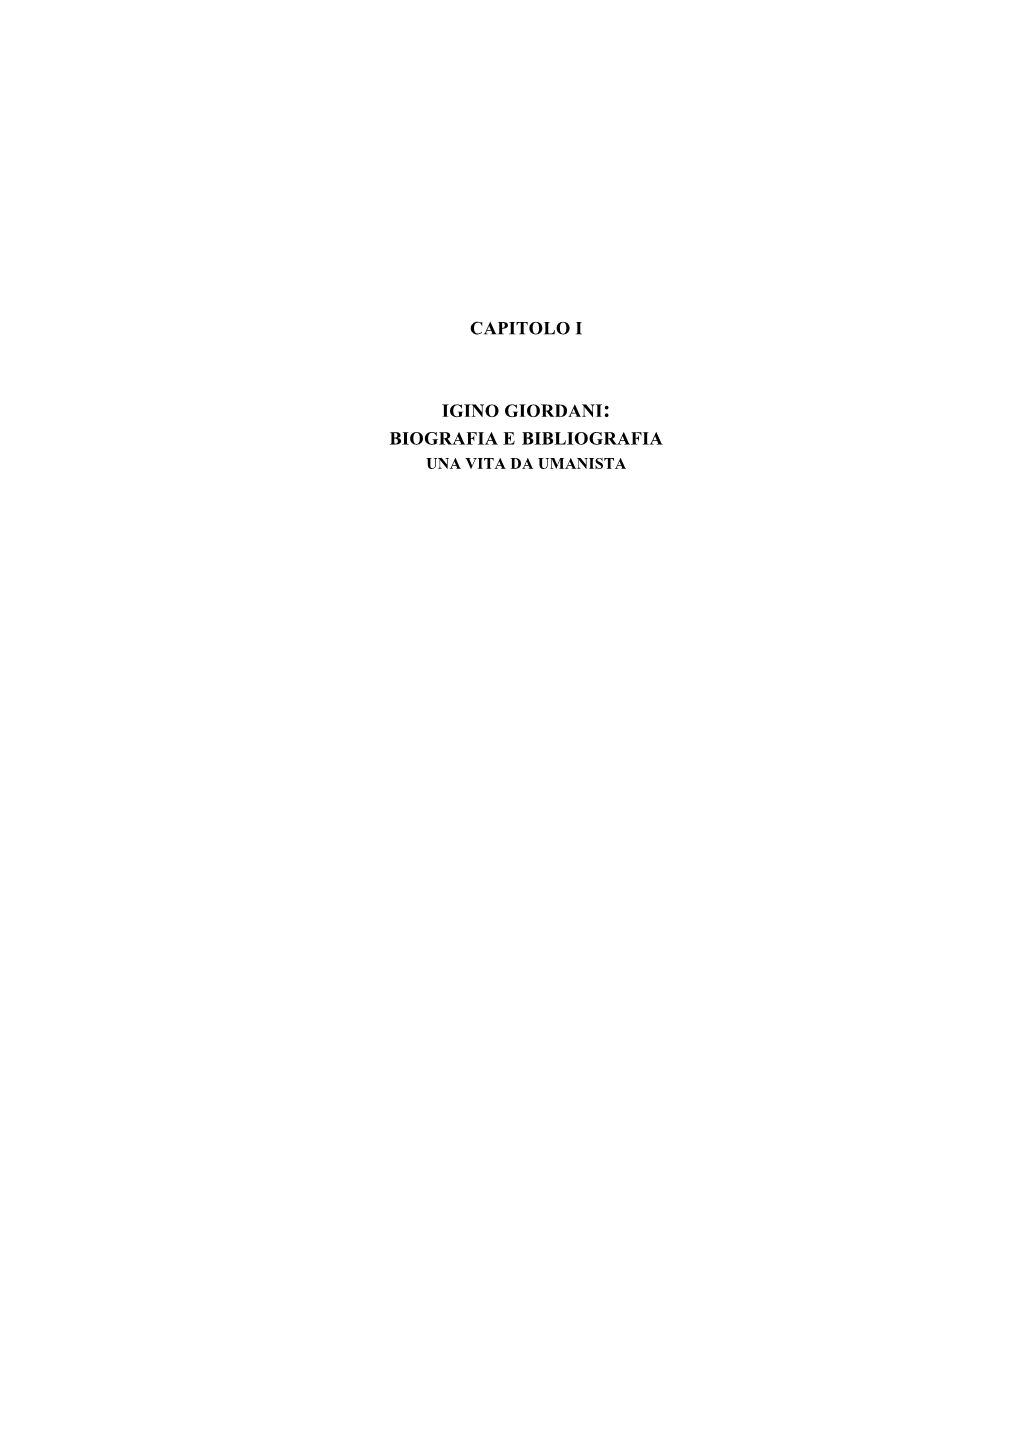 Capitolo I Igino Giordani: Biografia E Bibliografia